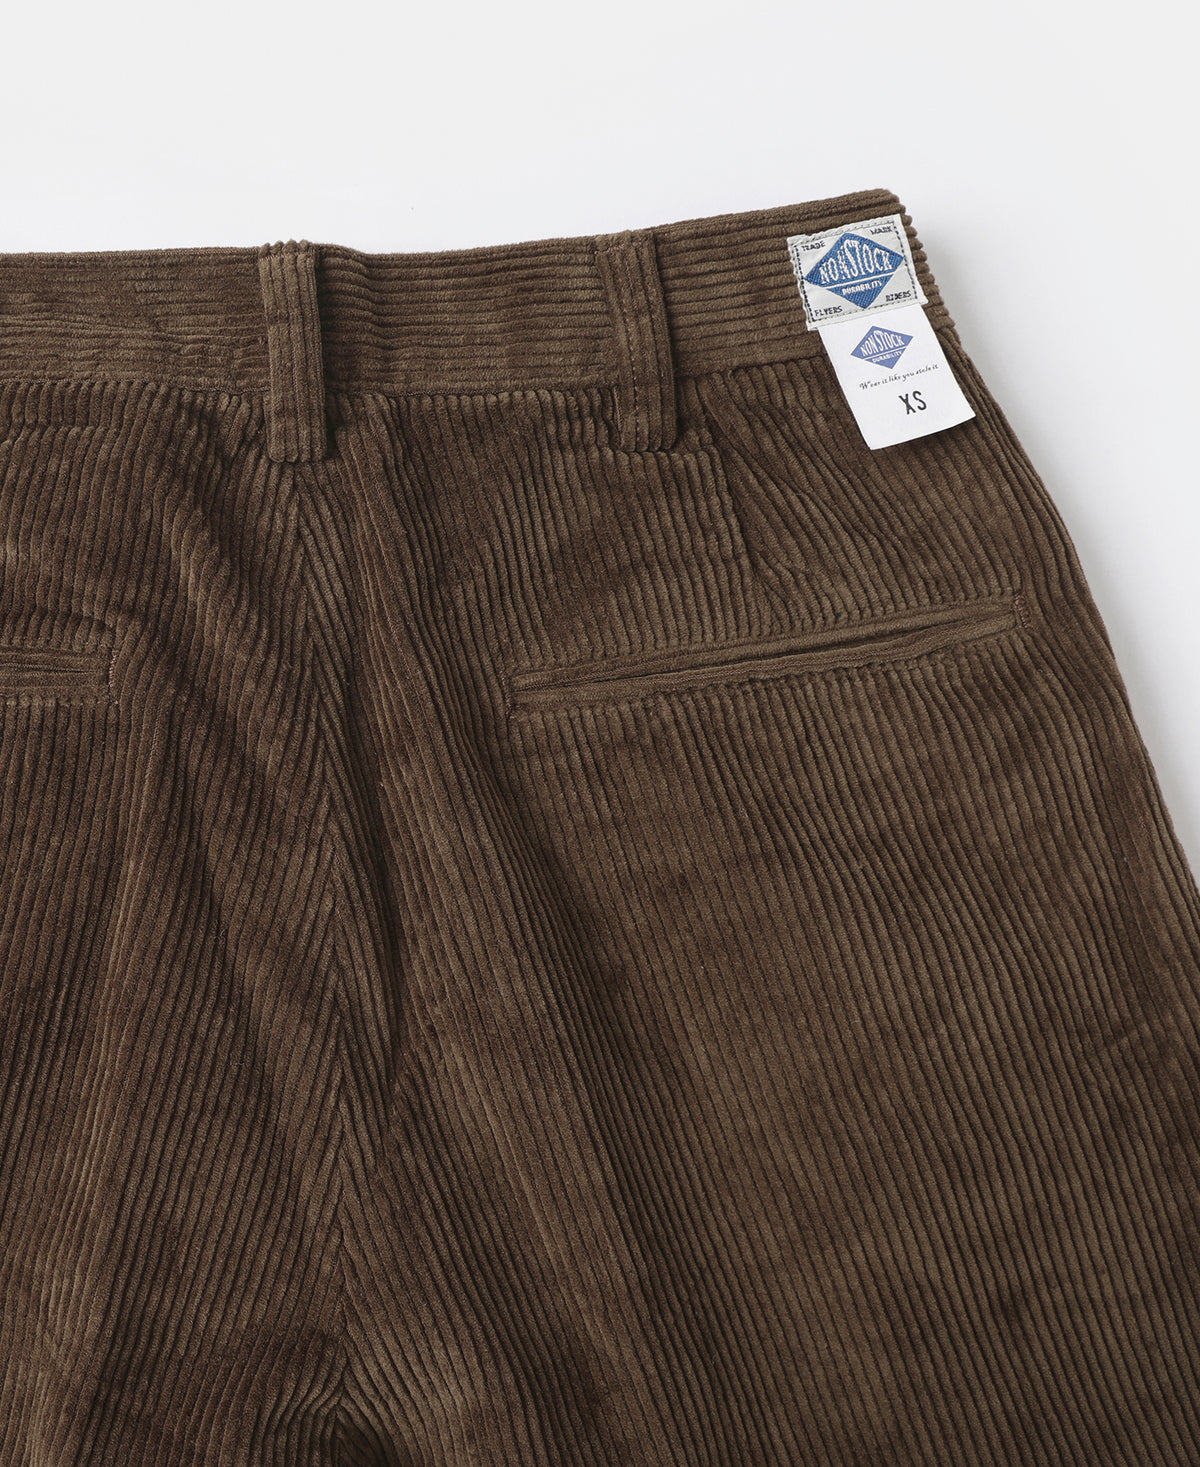 12.5 oz 8 Wale Corduroy Trousers - Brown